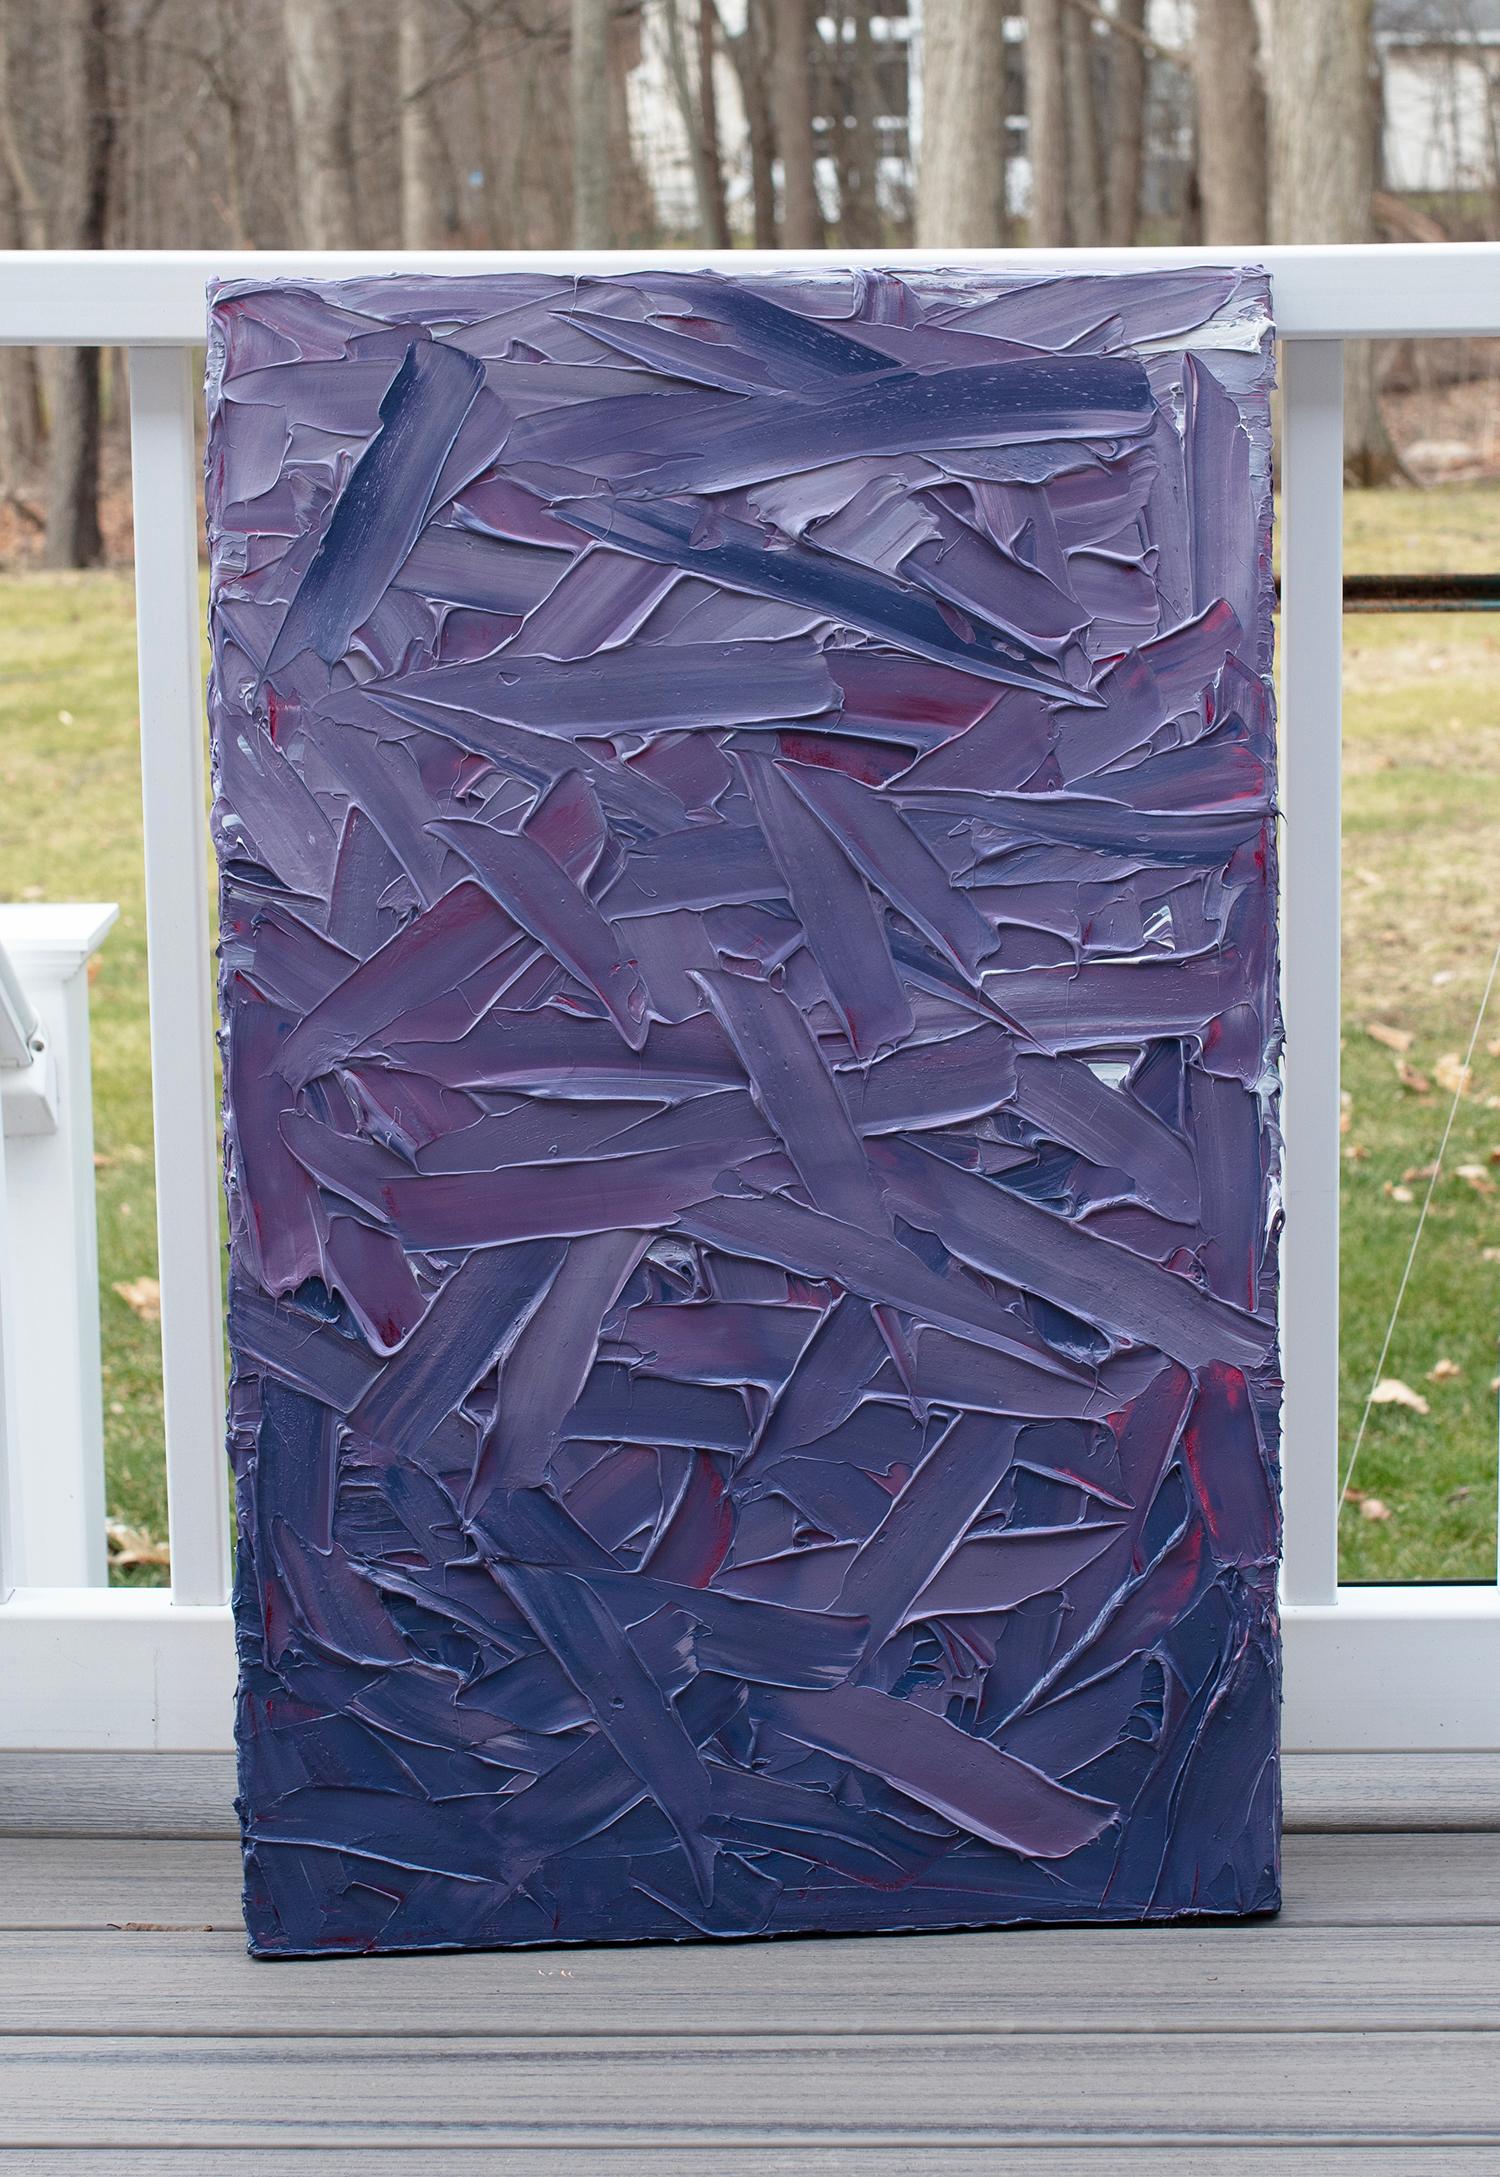 Cette peinture abstraite texturée de Teodora Guererra présente une palette de violets royaux profonds avec de subtils accents blancs et magenta. L'artiste applique la peinture en couches épaisses et en touches larges et énergiques. La peinture est